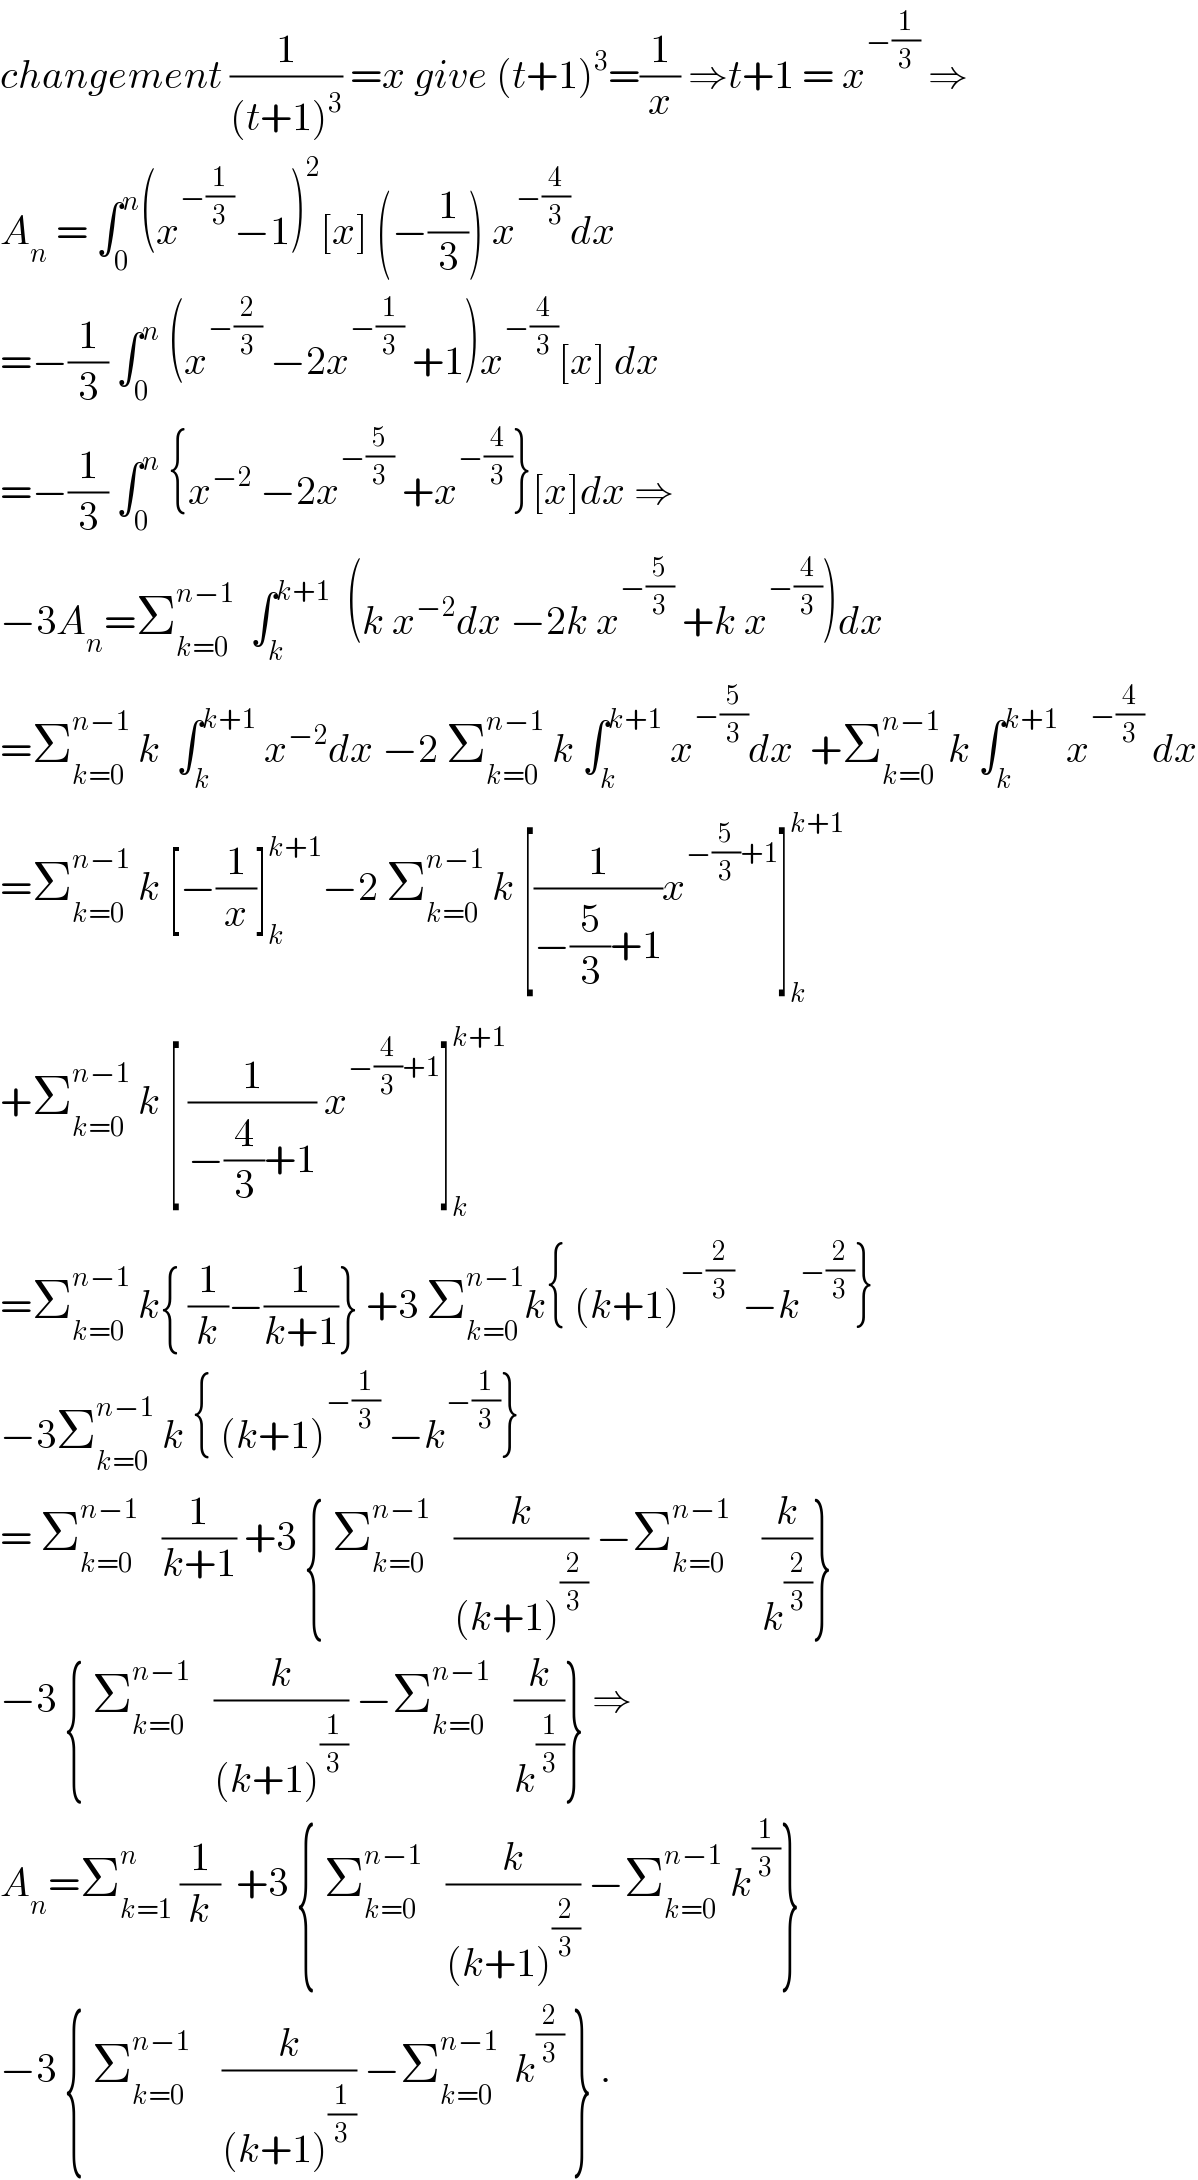 changement (1/((t+1)^3 )) =x give (t+1)^3 =(1/x) ⇒t+1 = x^(−(1/3))  ⇒  A_n  = ∫_0 ^n (x^(−(1/3)) −1)^2 [x] (−(1/3)) x^(−(4/3)) dx  =−(1/3) ∫_0 ^n  (x^(−(2/3))  −2x^(−(1/3))  +1)x^(−(4/3)) [x] dx  =−(1/3) ∫_0 ^n  {x^(−2)  −2x^(−(5/3))  +x^(−(4/3)) }[x]dx ⇒  −3A_n =Σ_(k=0) ^(n−1)   ∫_k ^(k+1)   (k x^(−2) dx −2k x^(−(5/3))  +k x^(−(4/3)) )dx  =Σ_(k=0) ^(n−1)  k  ∫_k ^(k+1)  x^(−2) dx −2 Σ_(k=0) ^(n−1)  k ∫_k ^(k+1)  x^(−(5/3)) dx  +Σ_(k=0) ^(n−1)  k ∫_k ^(k+1)  x^(−(4/3))  dx  =Σ_(k=0) ^(n−1)  k [−(1/x)]_k ^(k+1) −2 Σ_(k=0) ^(n−1)  k [(1/(−(5/3)+1))x^(−(5/3)+1) ]_k ^(k+1)   +Σ_(k=0) ^(n−1)  k [ (1/(−(4/3)+1)) x^(−(4/3)+1) ]_k ^(k+1)   =Σ_(k=0) ^(n−1)  k{ (1/k)−(1/(k+1))} +3 Σ_(k=0) ^(n−1) k{ (k+1)^(−(2/3))  −k^(−(2/3)) }     −3Σ_(k=0) ^(n−1)  k { (k+1)^(−(1/3))  −k^(−(1/3)) }  = Σ_(k=0) ^(n−1)    (1/(k+1)) +3 { Σ_(k=0) ^(n−1)    (k/((k+1)^(2/3) )) −Σ_(k=0) ^(n−1)     (k/k^(2/3) )}  −3 { Σ_(k=0) ^(n−1)    (k/((k+1)^(1/3) )) −Σ_(k=0) ^(n−1)    (k/k^(1/3) )} ⇒  A_n =Σ_(k=1) ^n  (1/k)  +3 { Σ_(k=0) ^(n−1)    (k/((k+1)^(2/3) )) −Σ_(k=0) ^(n−1)  k^(1/3) }  −3 { Σ_(k=0) ^(n−1)     (k/((k+1)^(1/3) )) −Σ_(k=0) ^(n−1)   k^(2/3)  } .  